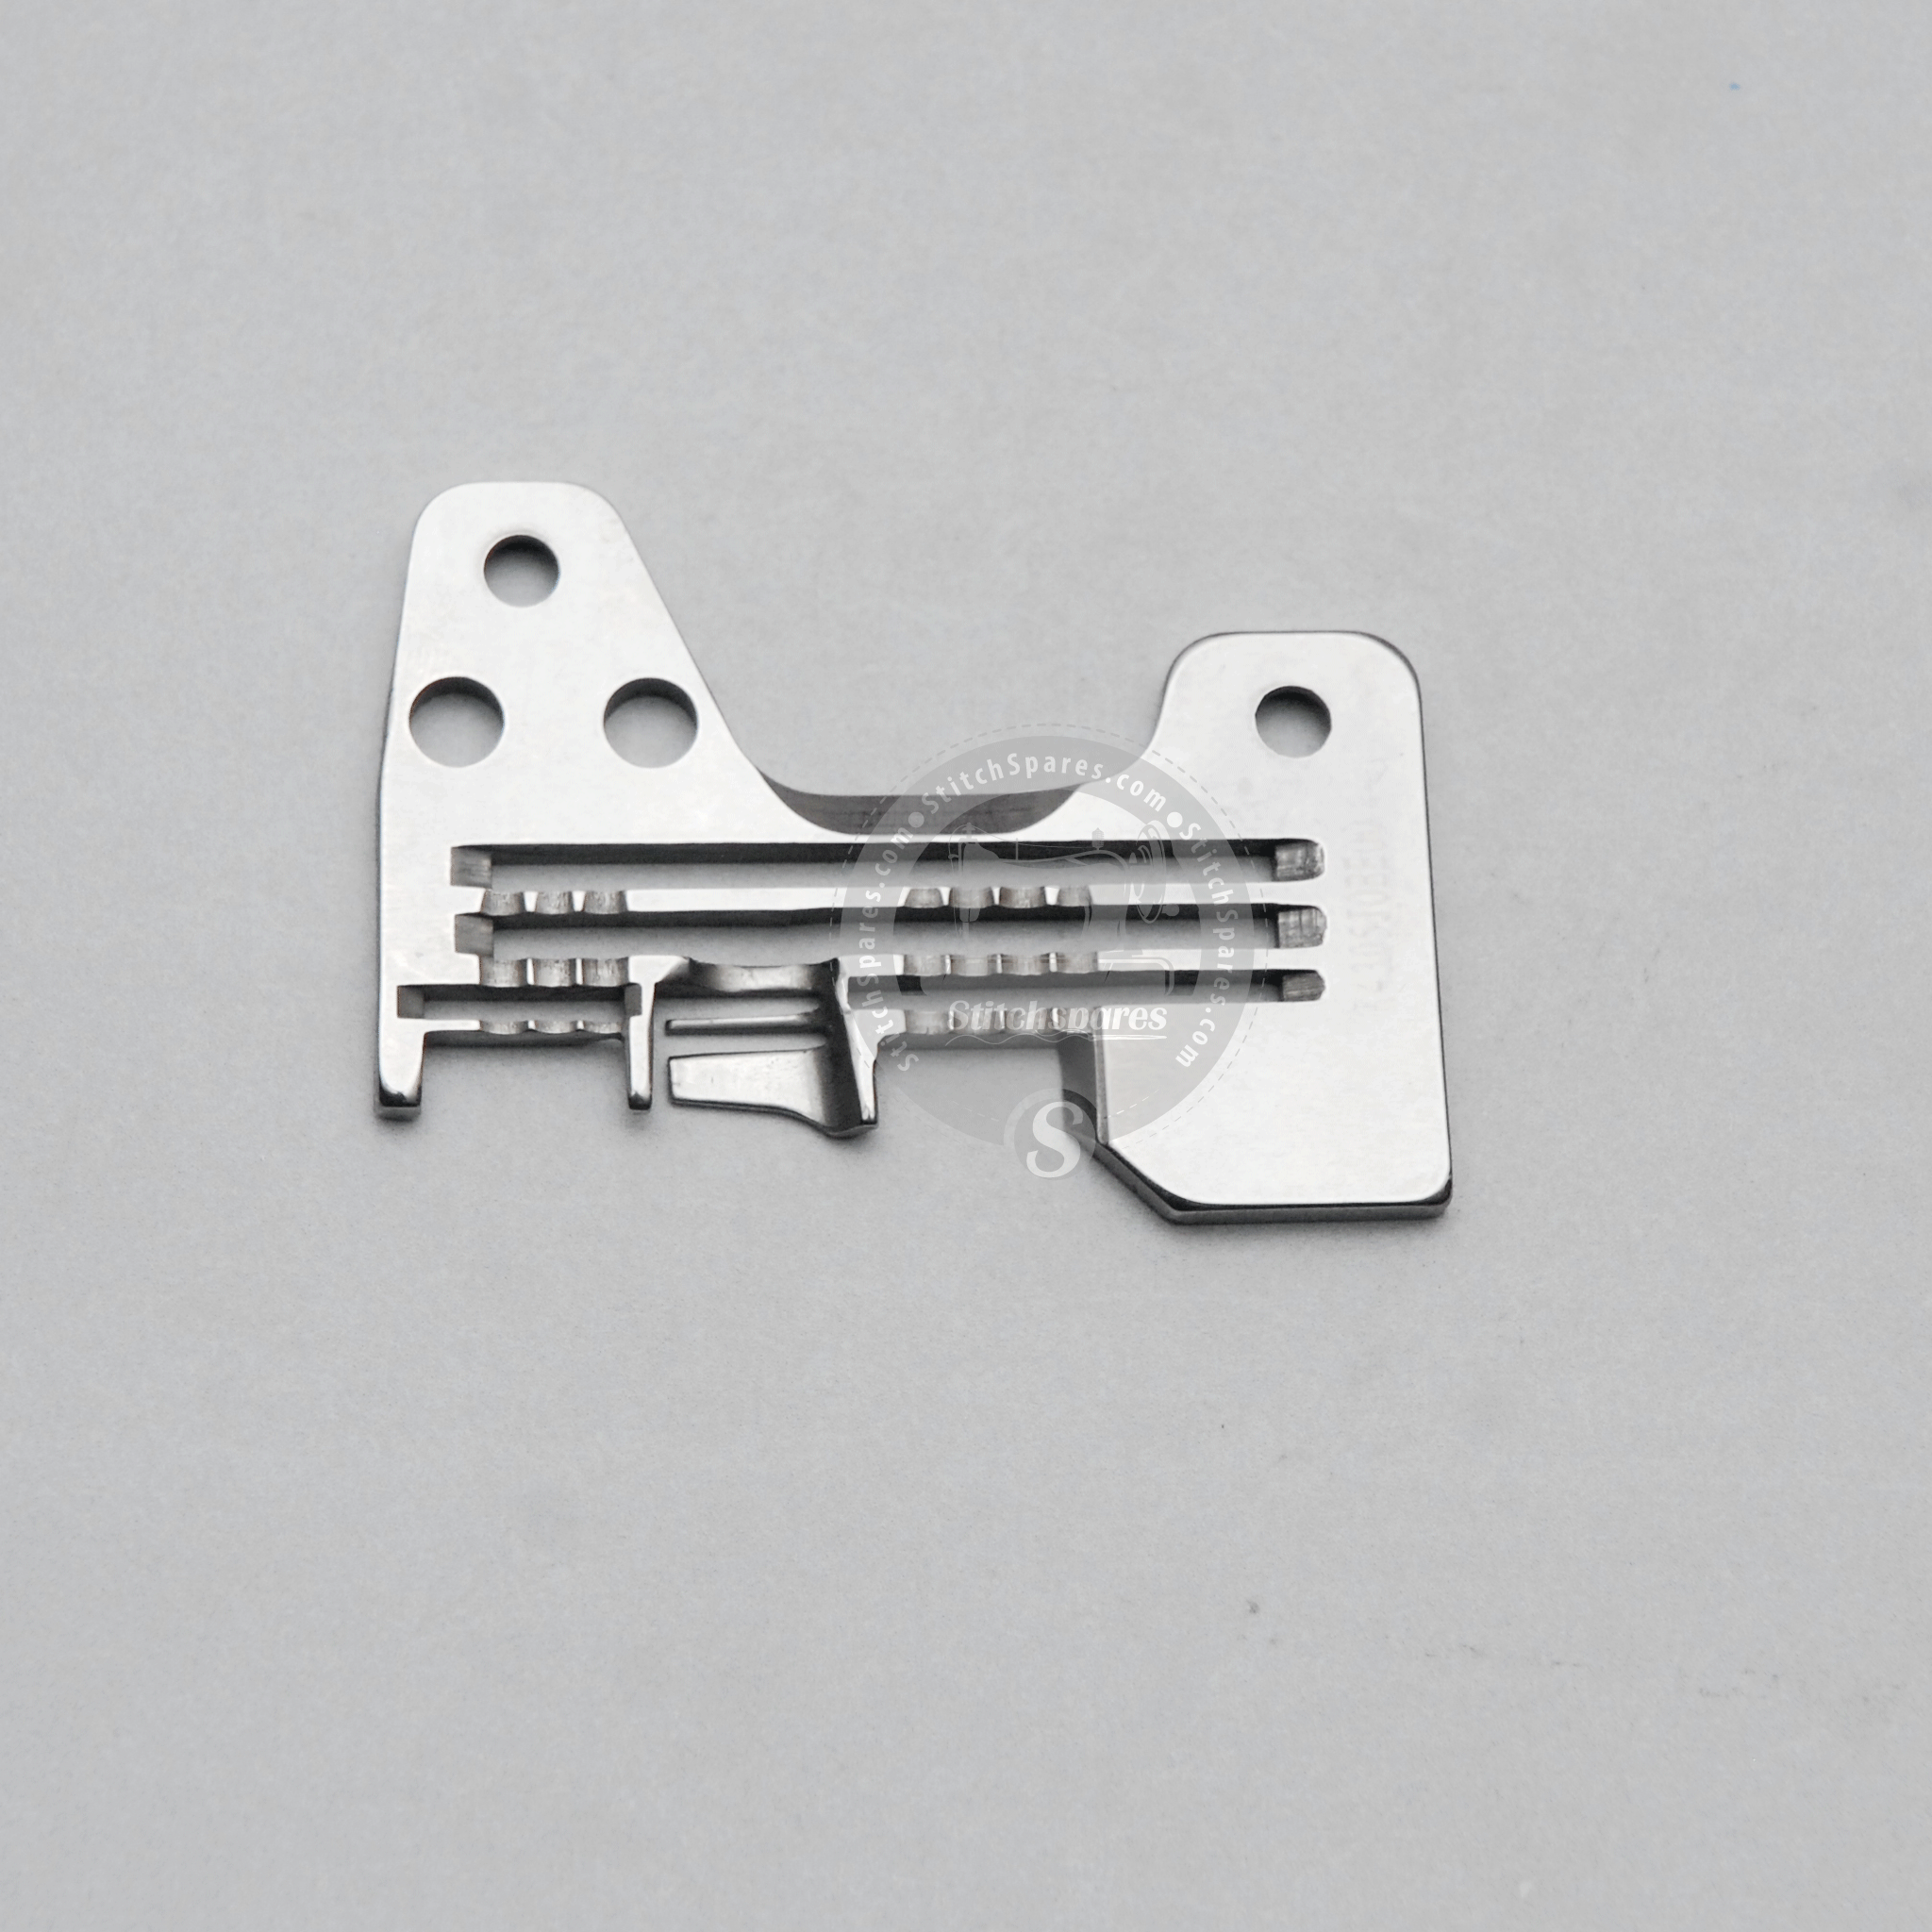 Strong-H R4305-Joe-E00 placa de aguja Juki Mo-3914-Be6 (2.0 × 4.0) pieza de repuesto para máquina de coser